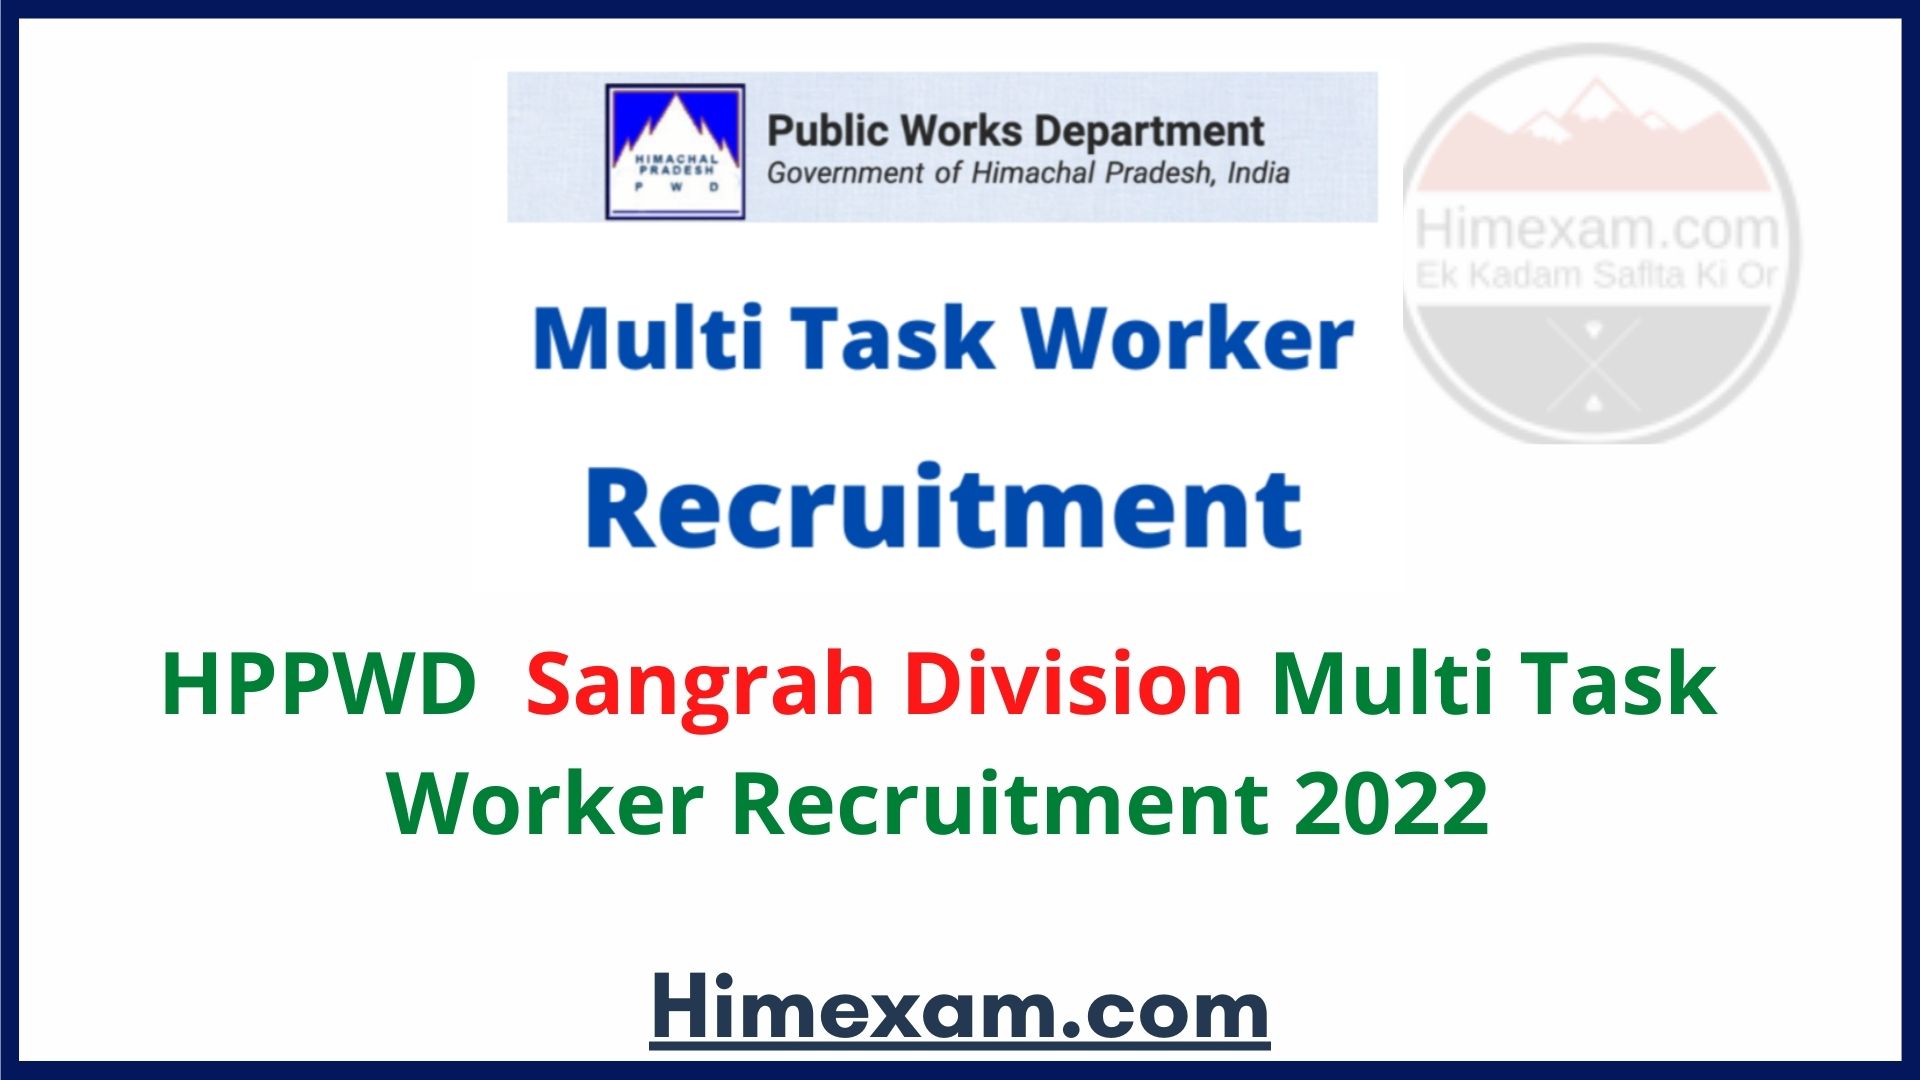 HPPWD Sangrah Division Multi Task Worker Recruitment 2022